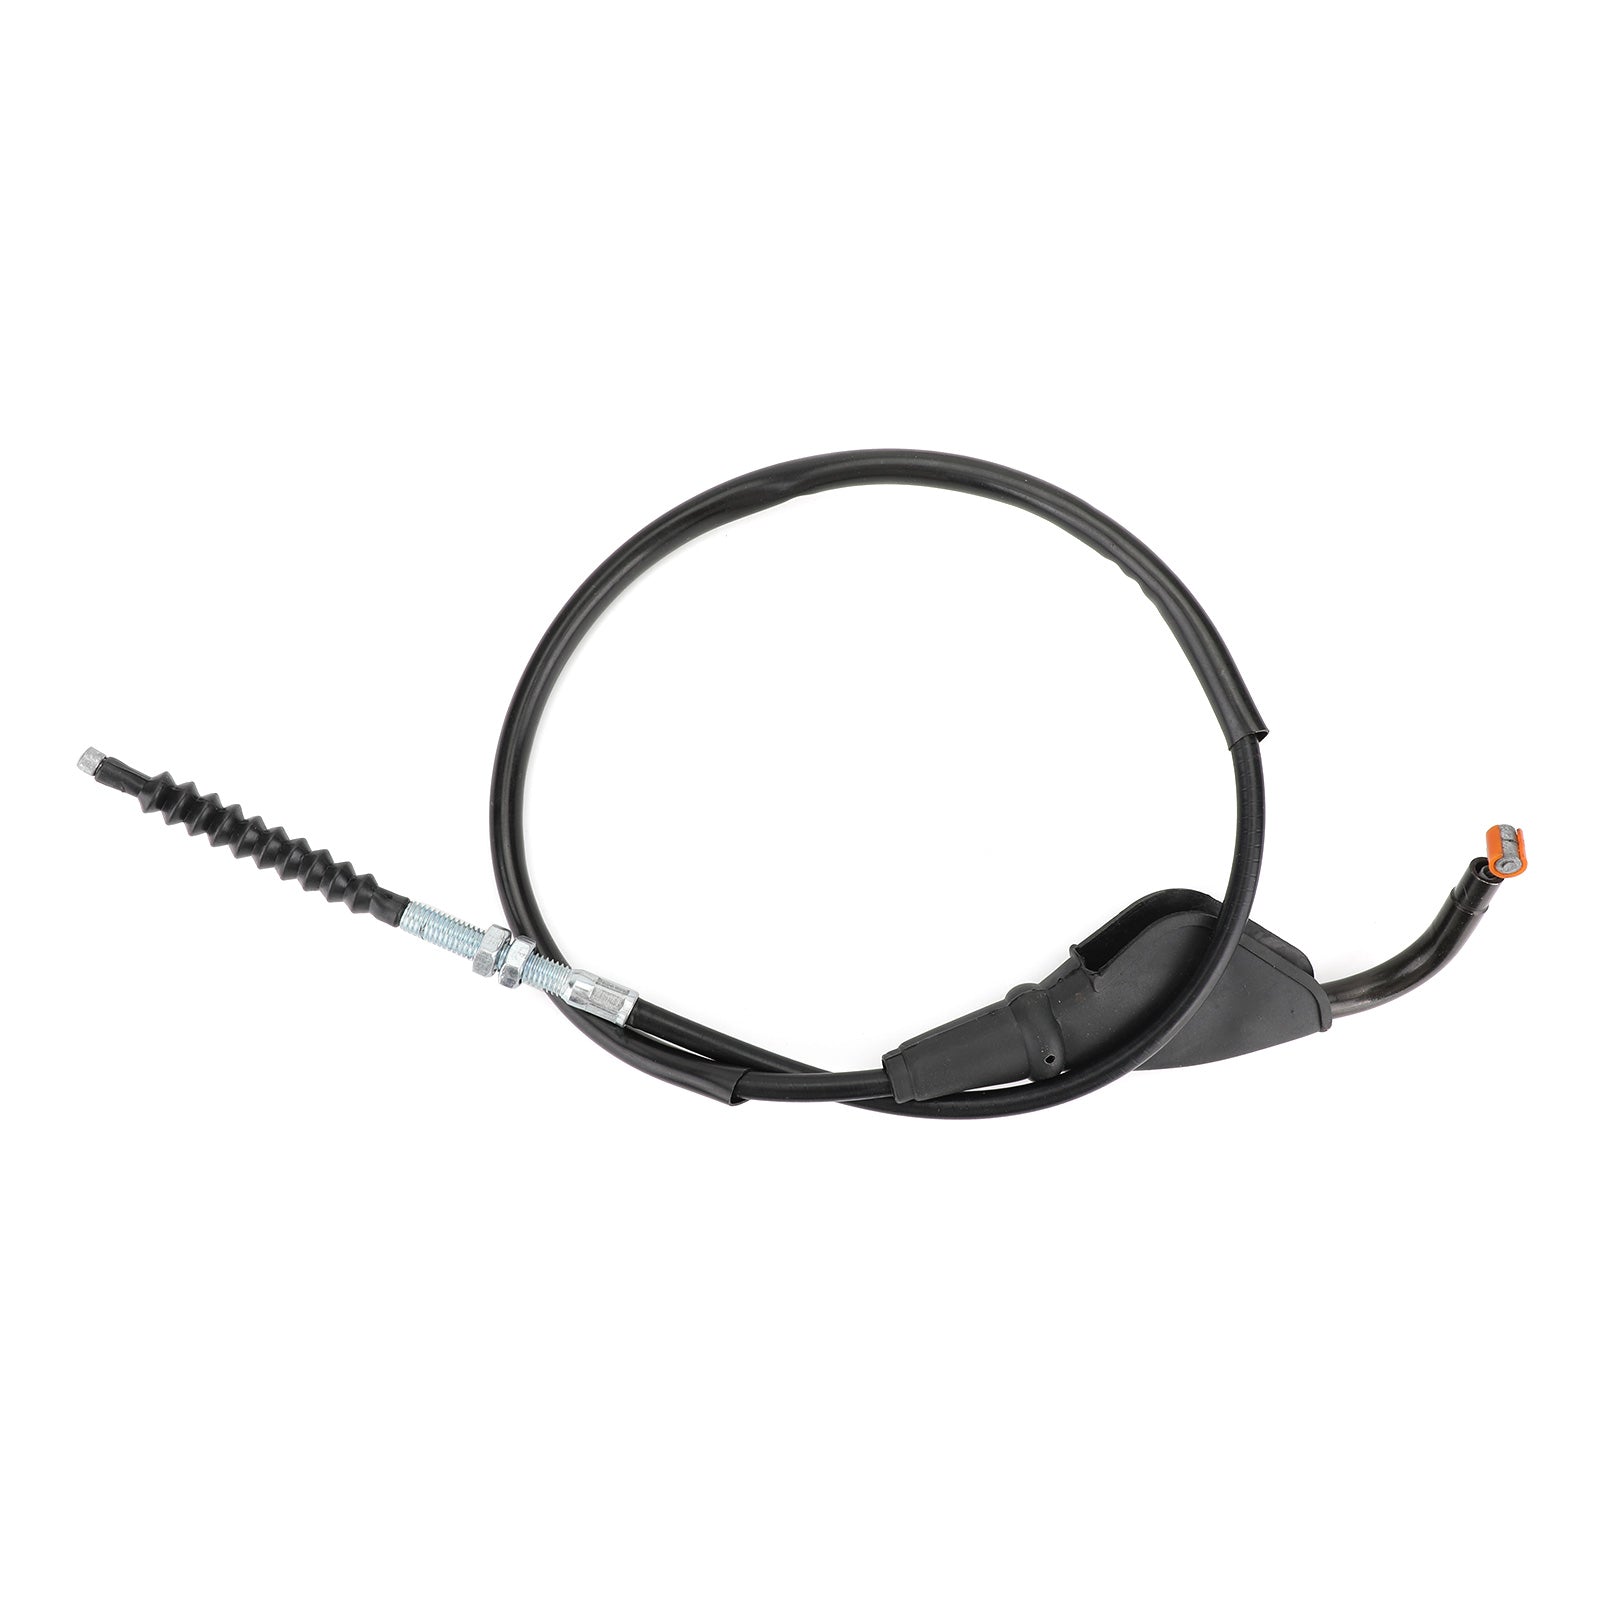 Remplacement de câble d'embrayage de moto 2PK-F6335-00 pour Yamaha YZF R15 2015-2017 générique